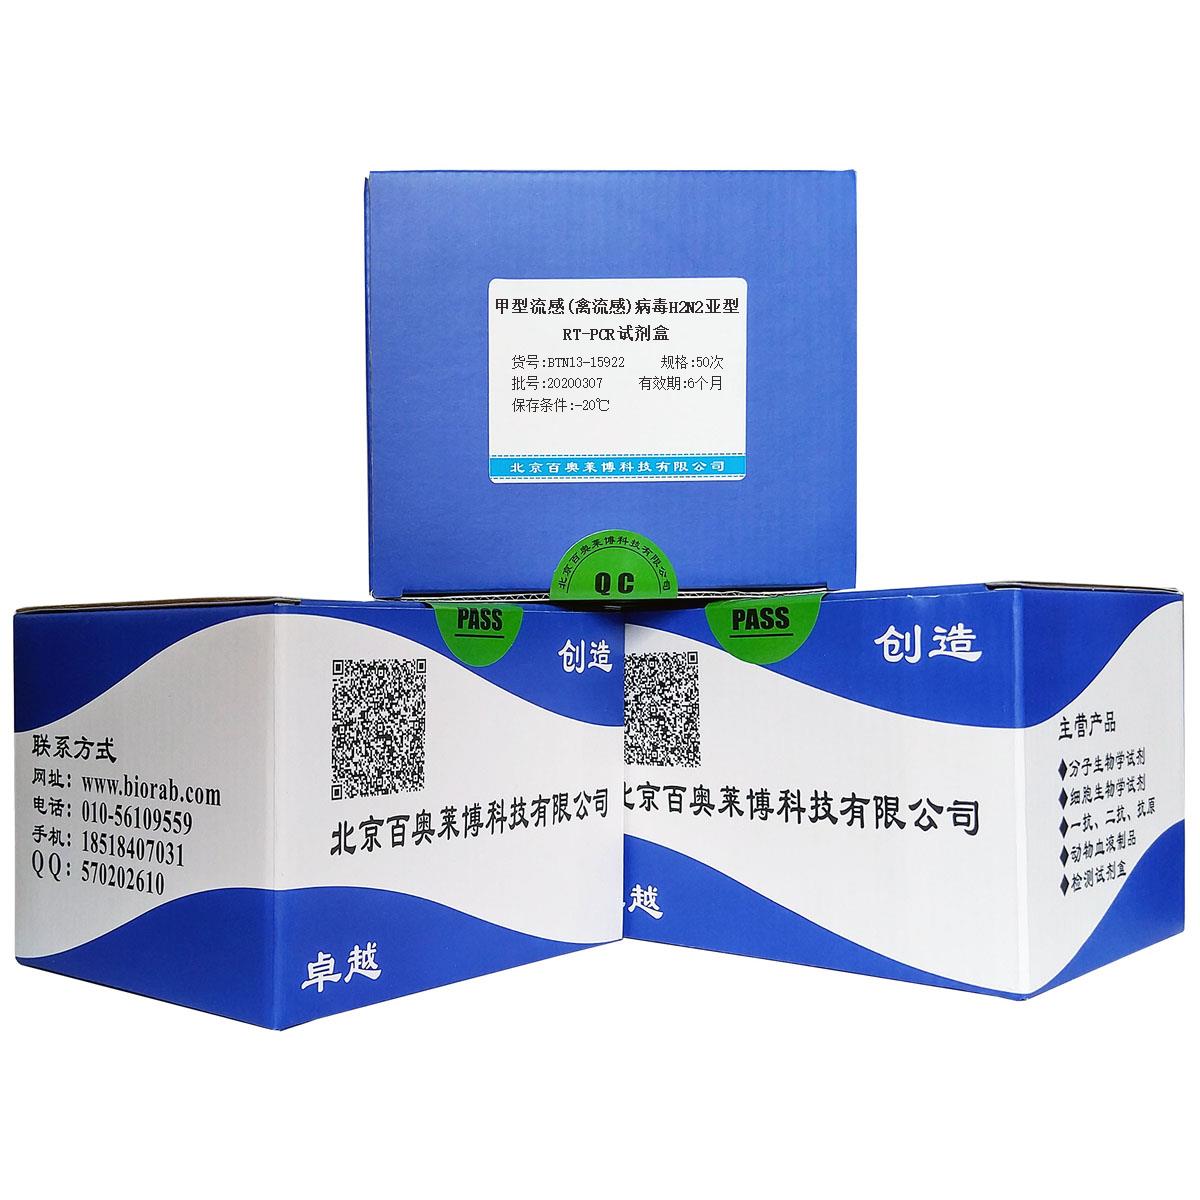 甲型流感(禽流感)病毒H2N2亚型RT-PCR试剂盒